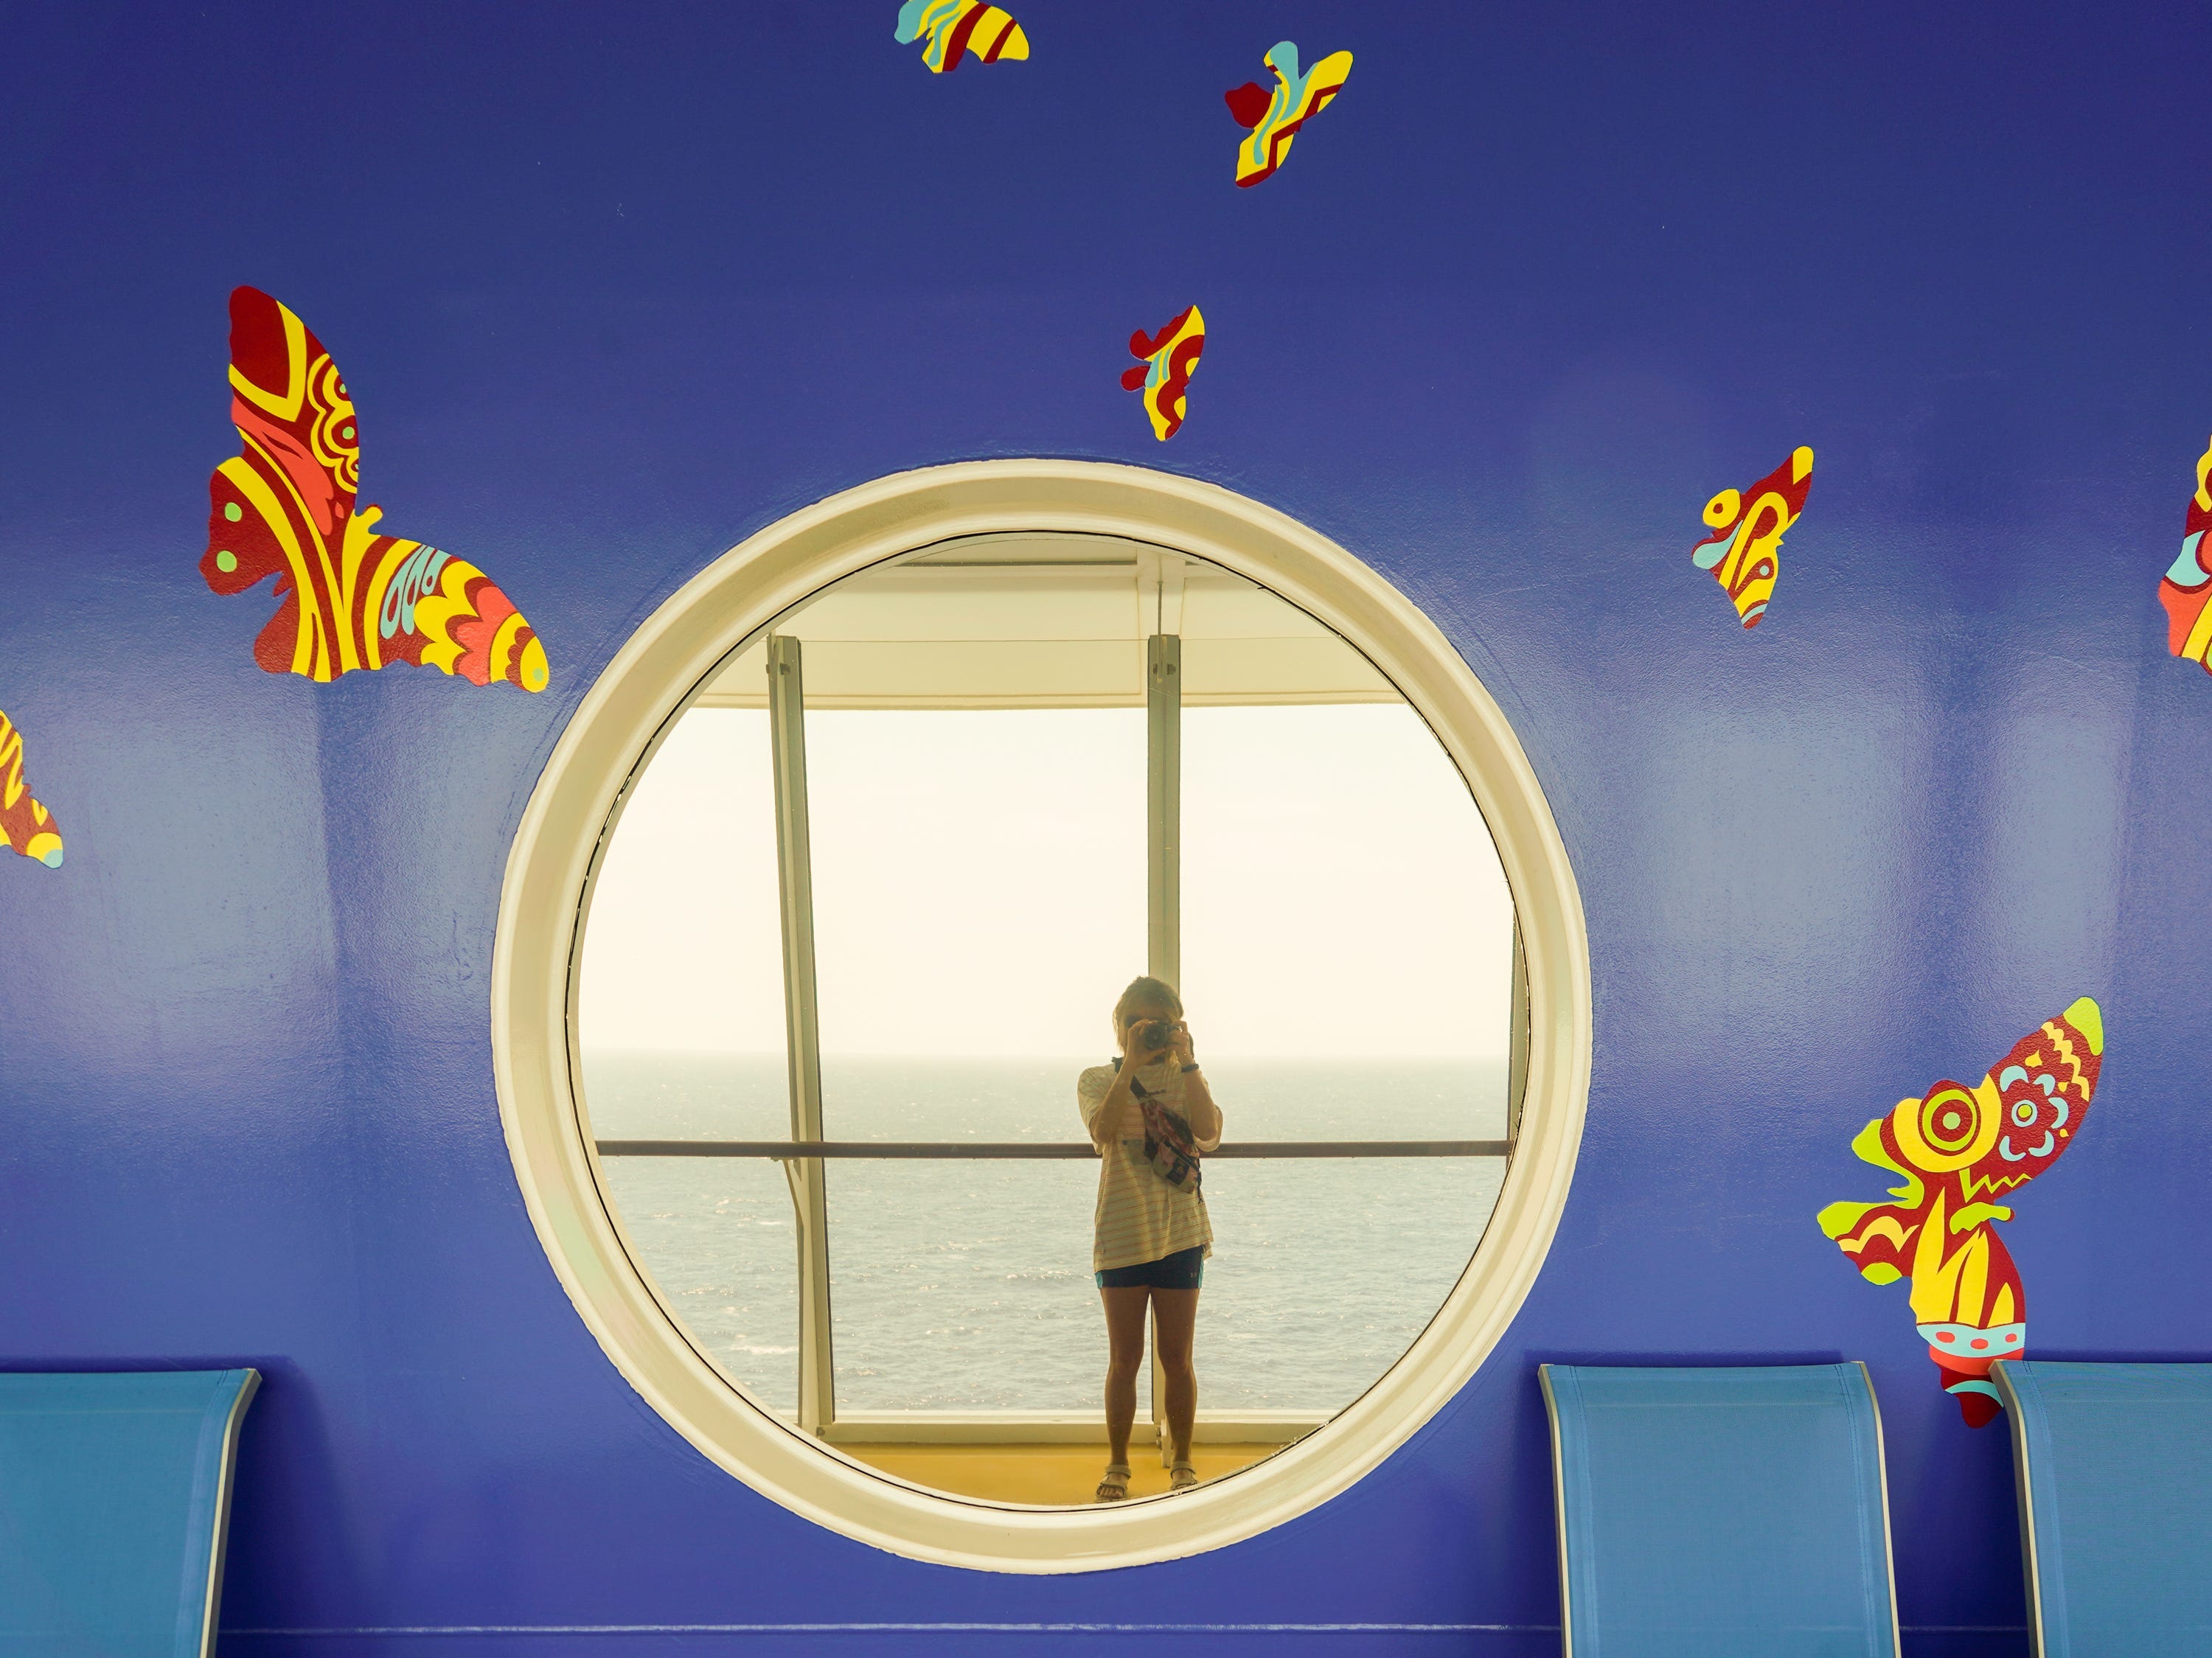 Der Autor in einer Bullauge-Spiegelung auf einem Kreuzfahrtschiff